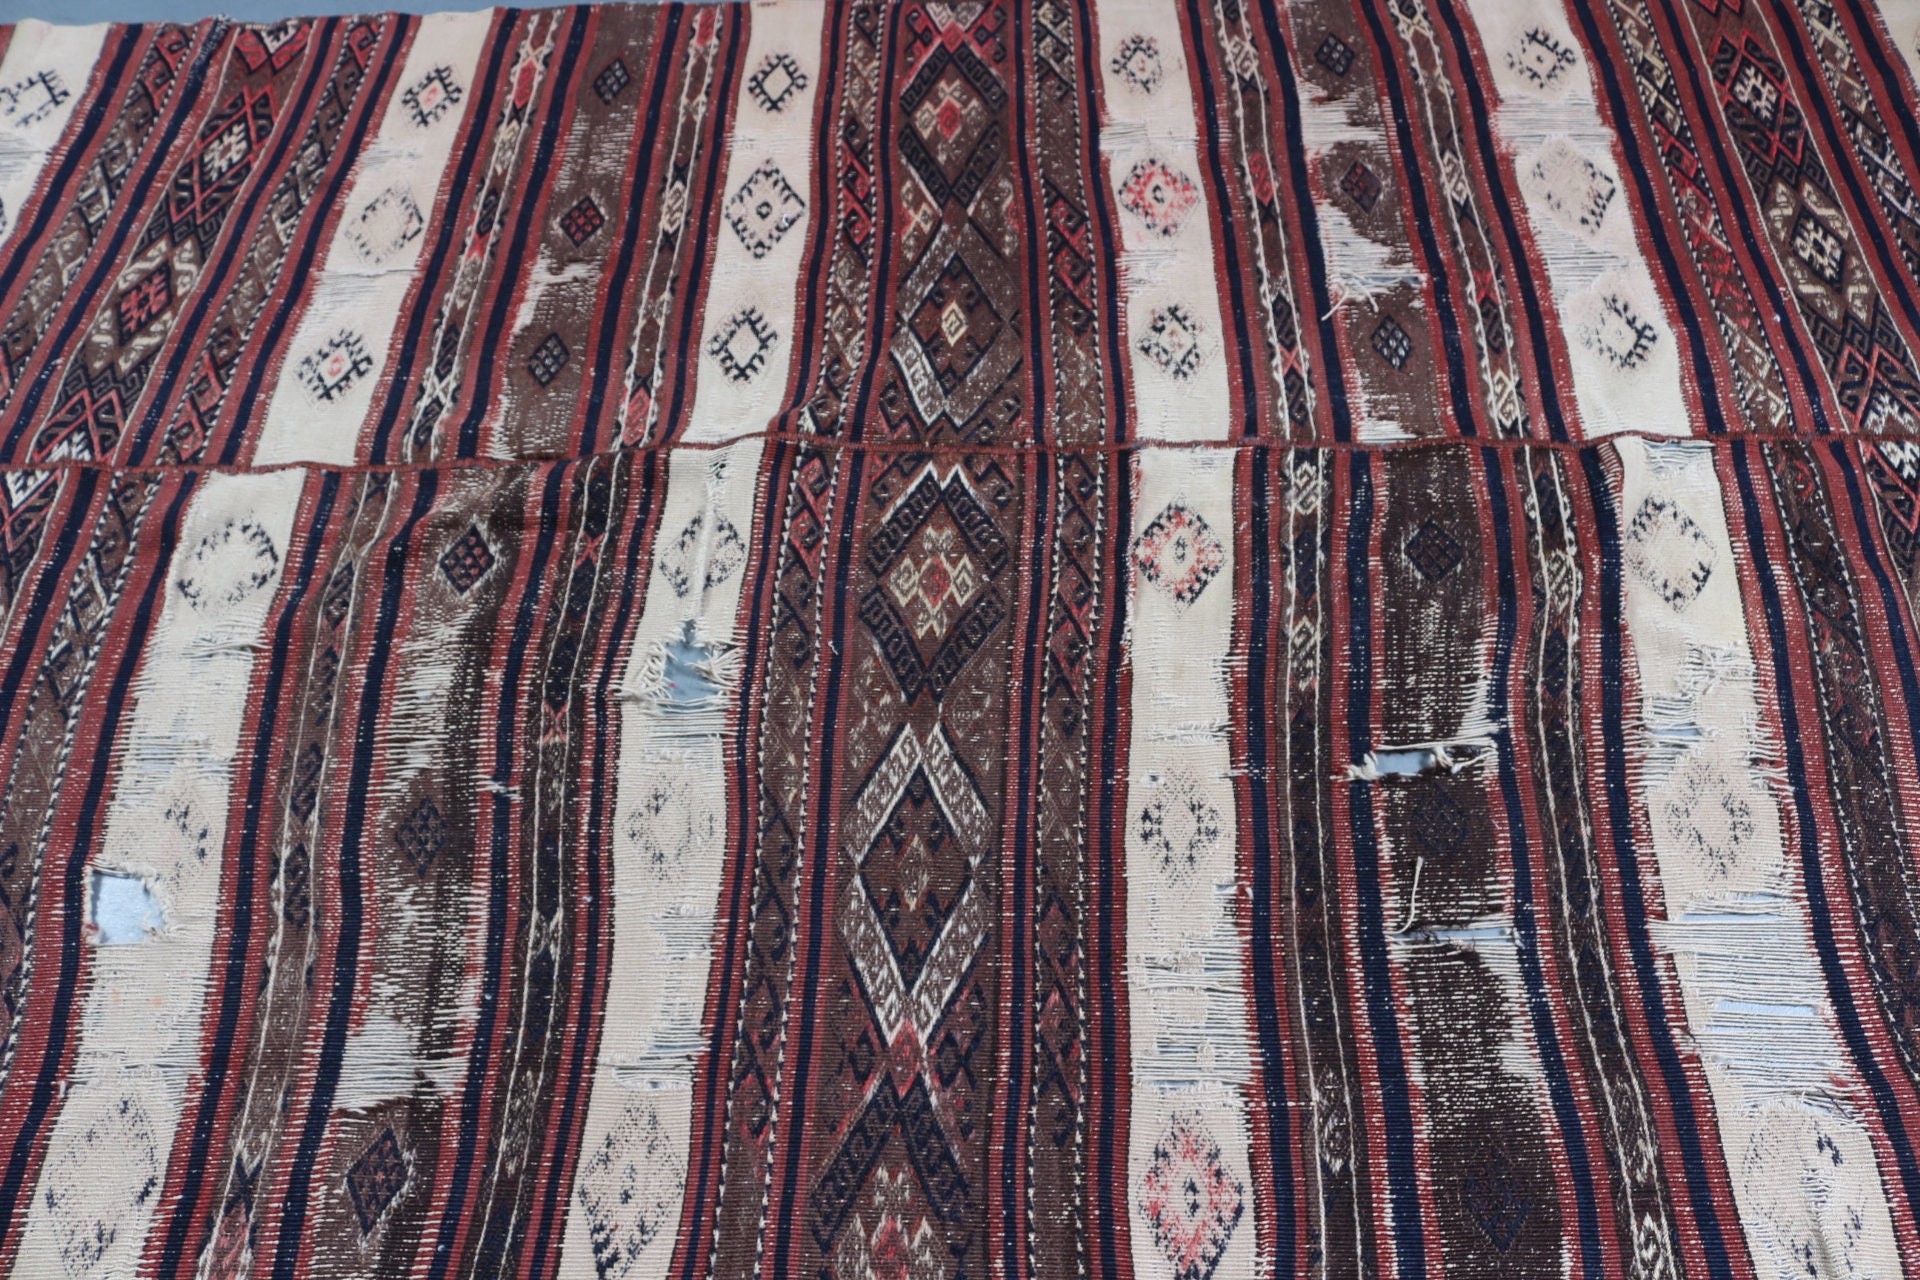 Living Room Rug, Turkish Rugs, Home Decor Rug, Beige Moroccan Rug, Kilim, Dining Room Rug, Vintage Rug, 5.2x11 ft Large Rug